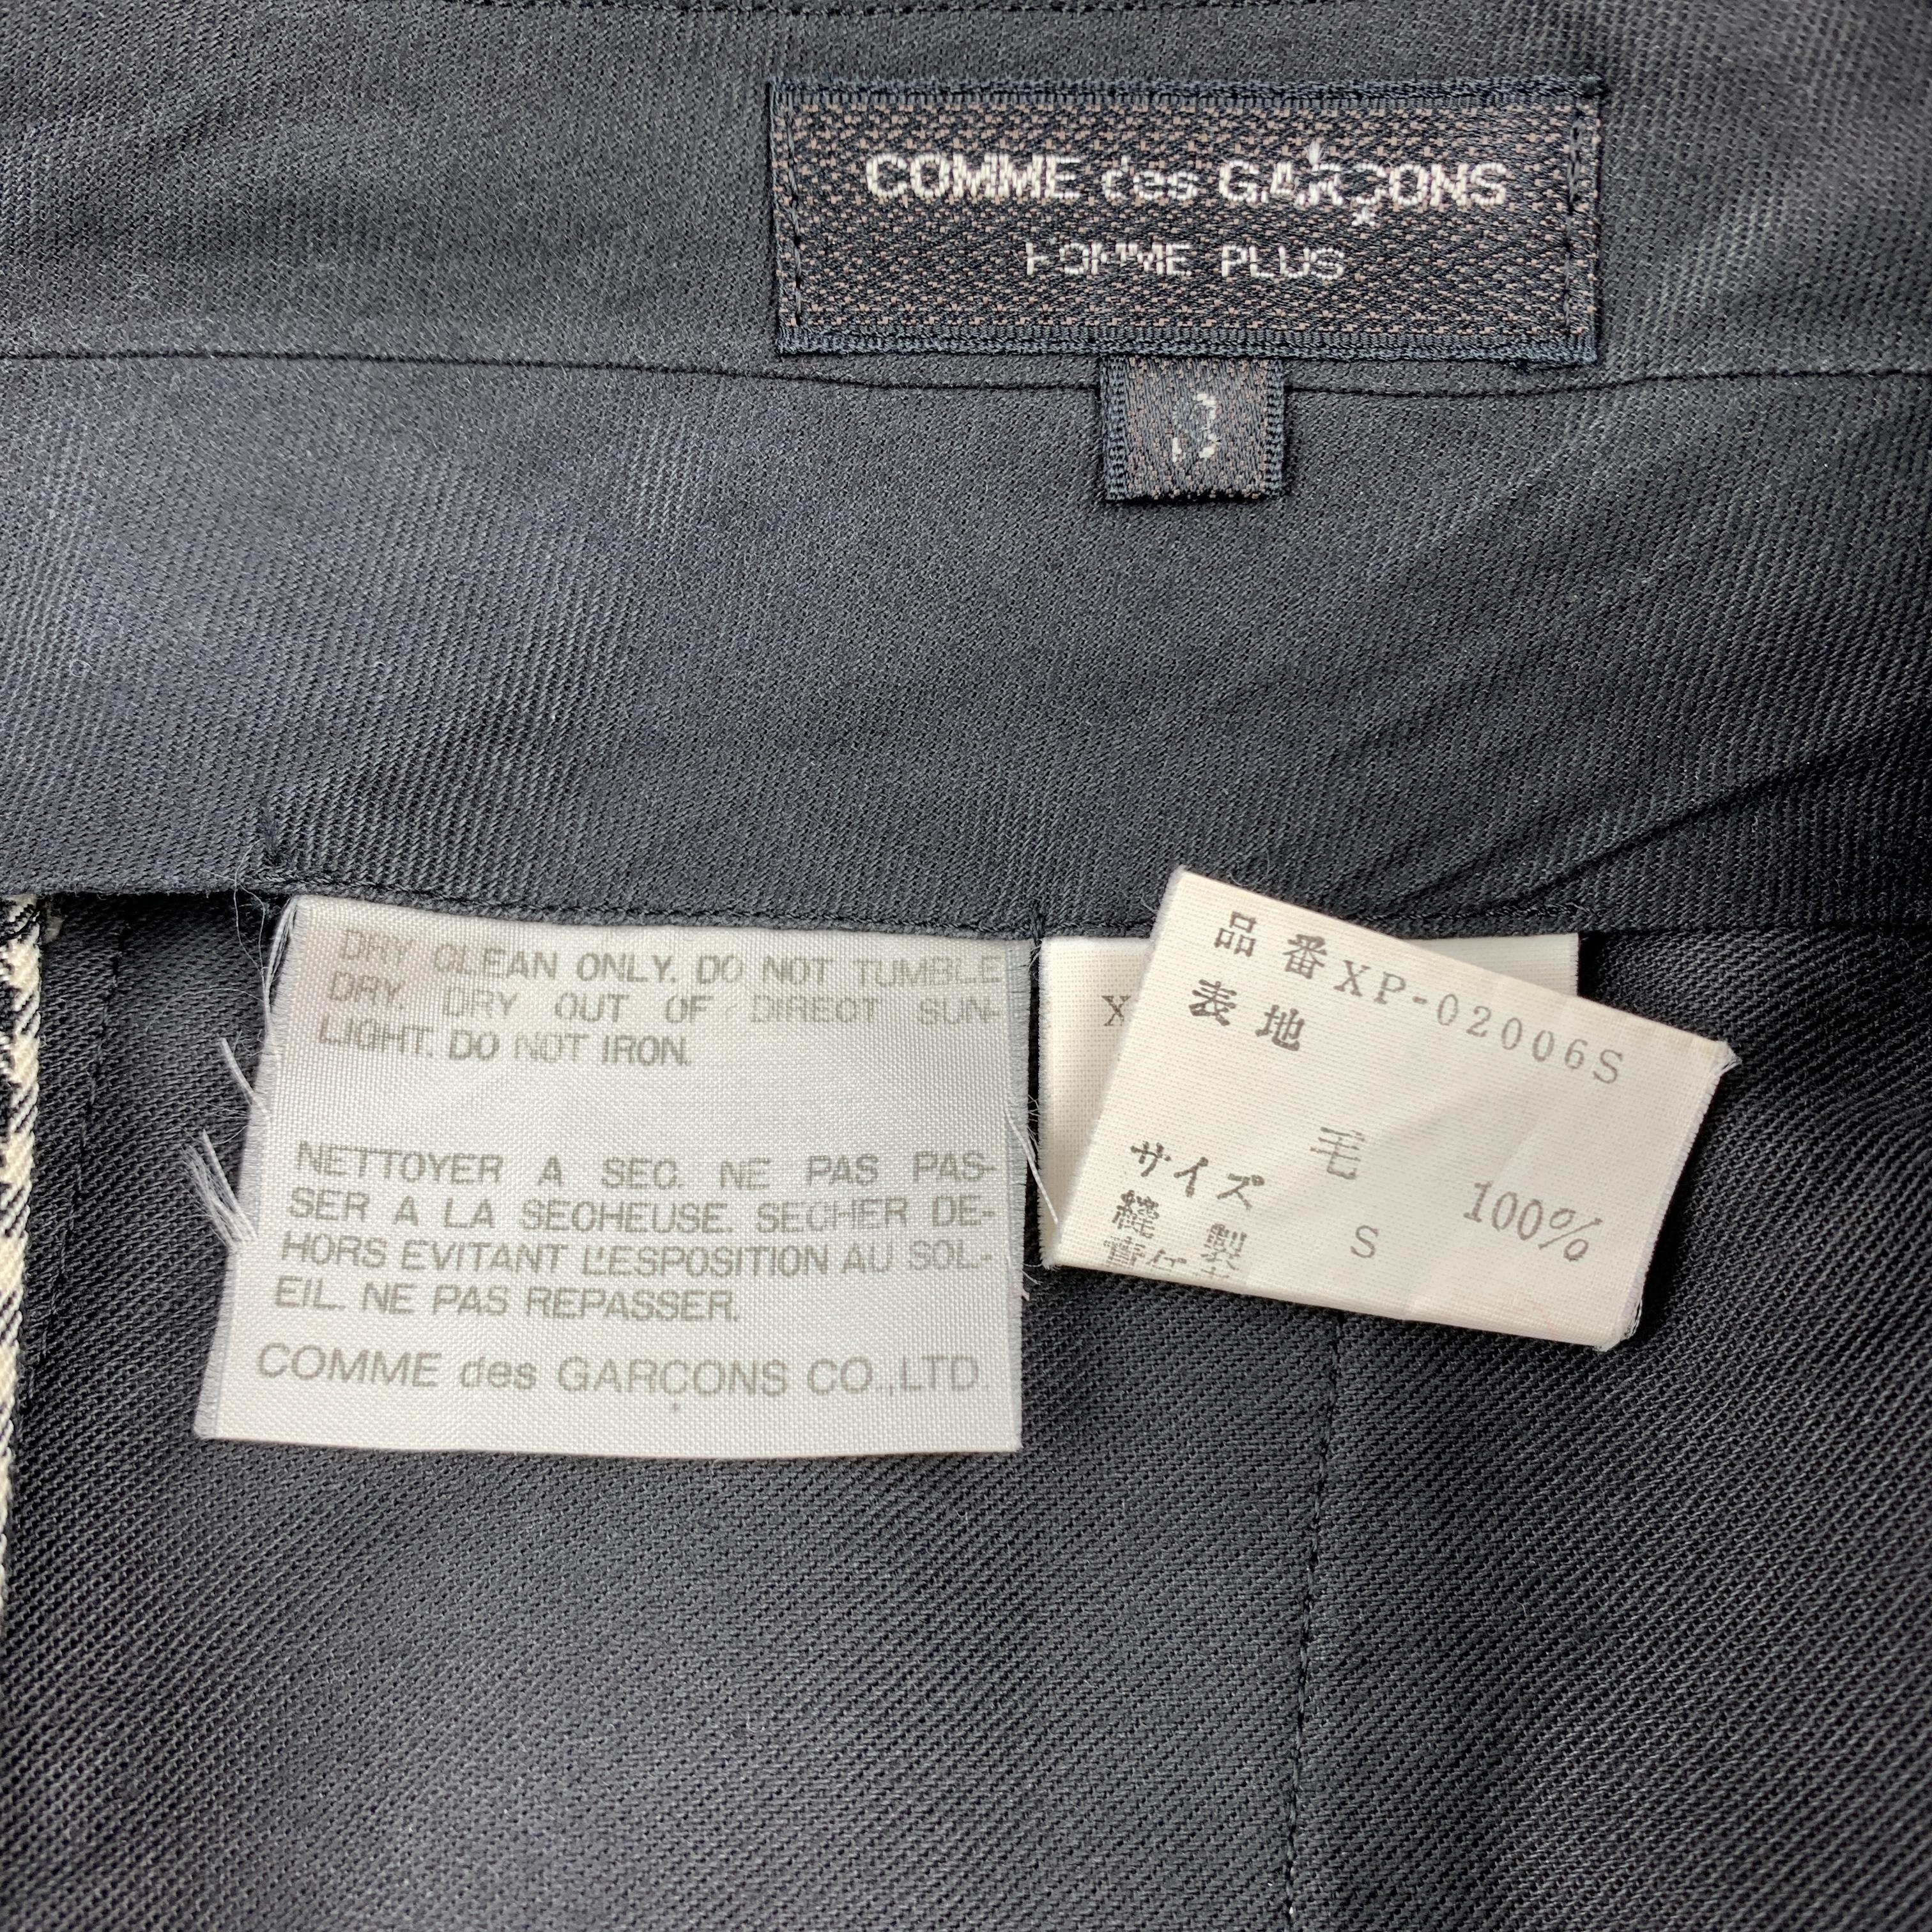 Vintage COMME des GARCONS HOMME PLUS Size S Black & White Nailhead Casual Pants 1